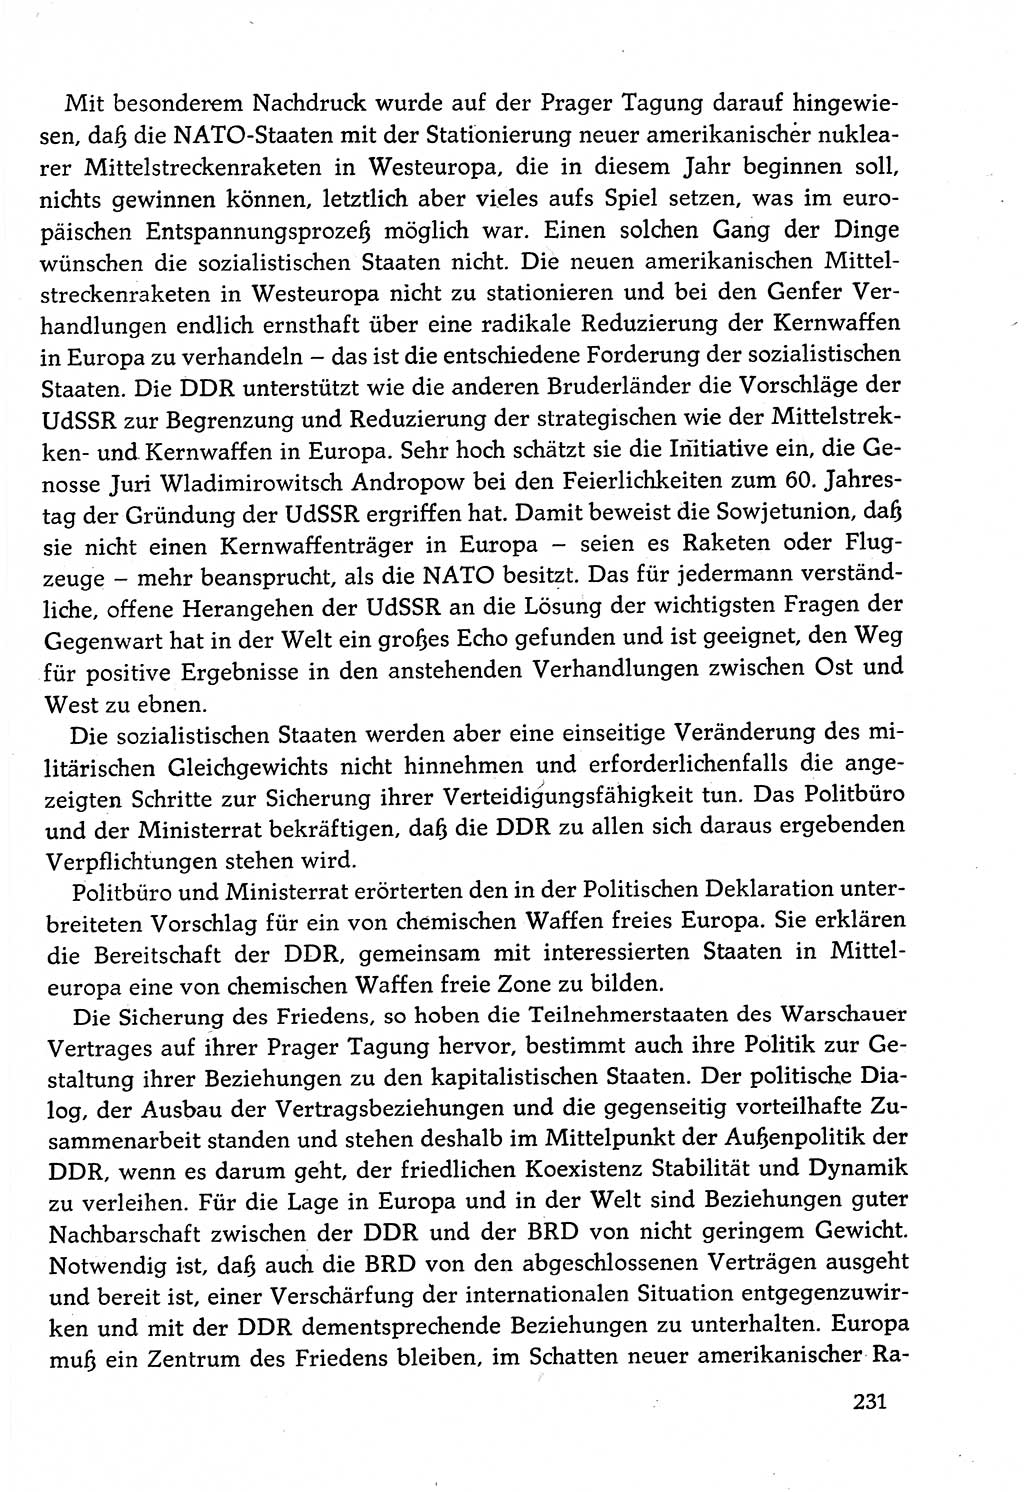 Dokumente der Sozialistischen Einheitspartei Deutschlands (SED) [Deutsche Demokratische Republik (DDR)] 1982-1983, Seite 231 (Dok. SED DDR 1982-1983, S. 231)